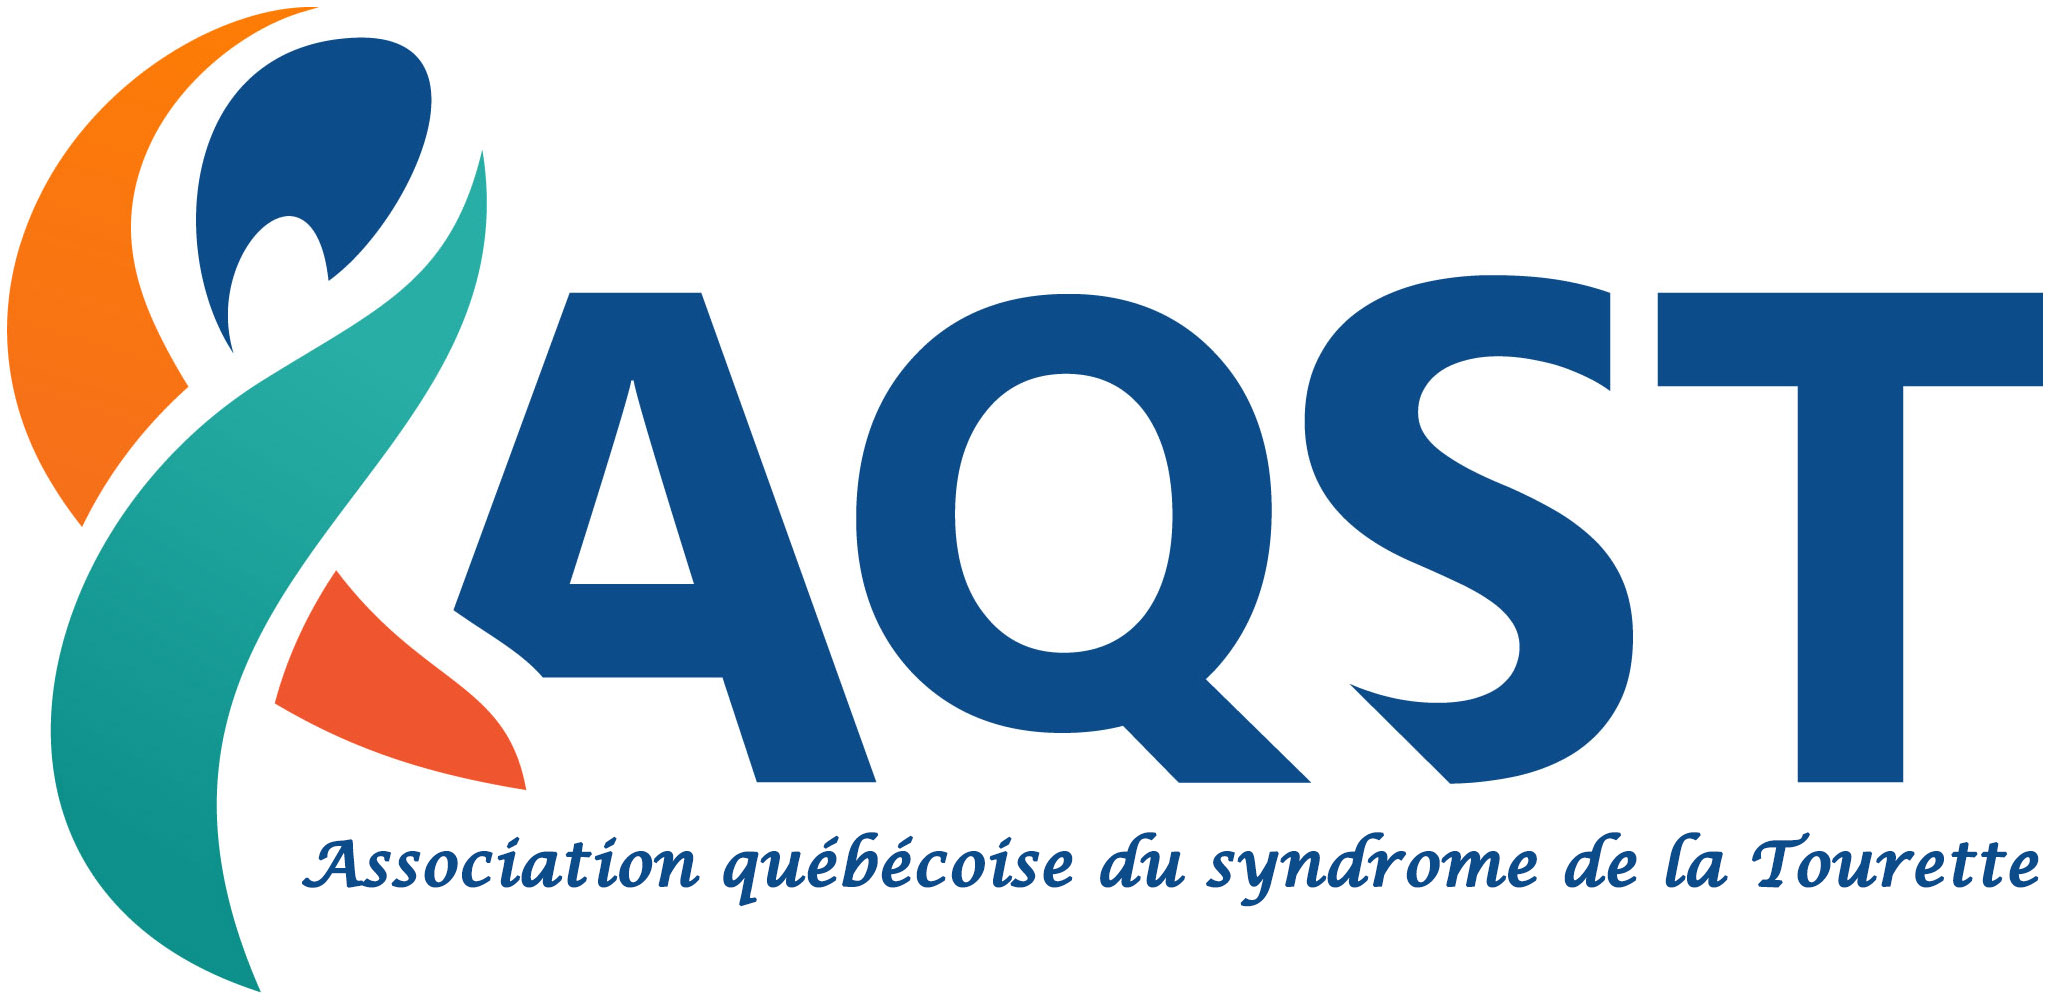 Association québécoise du syndrome de la Tourette